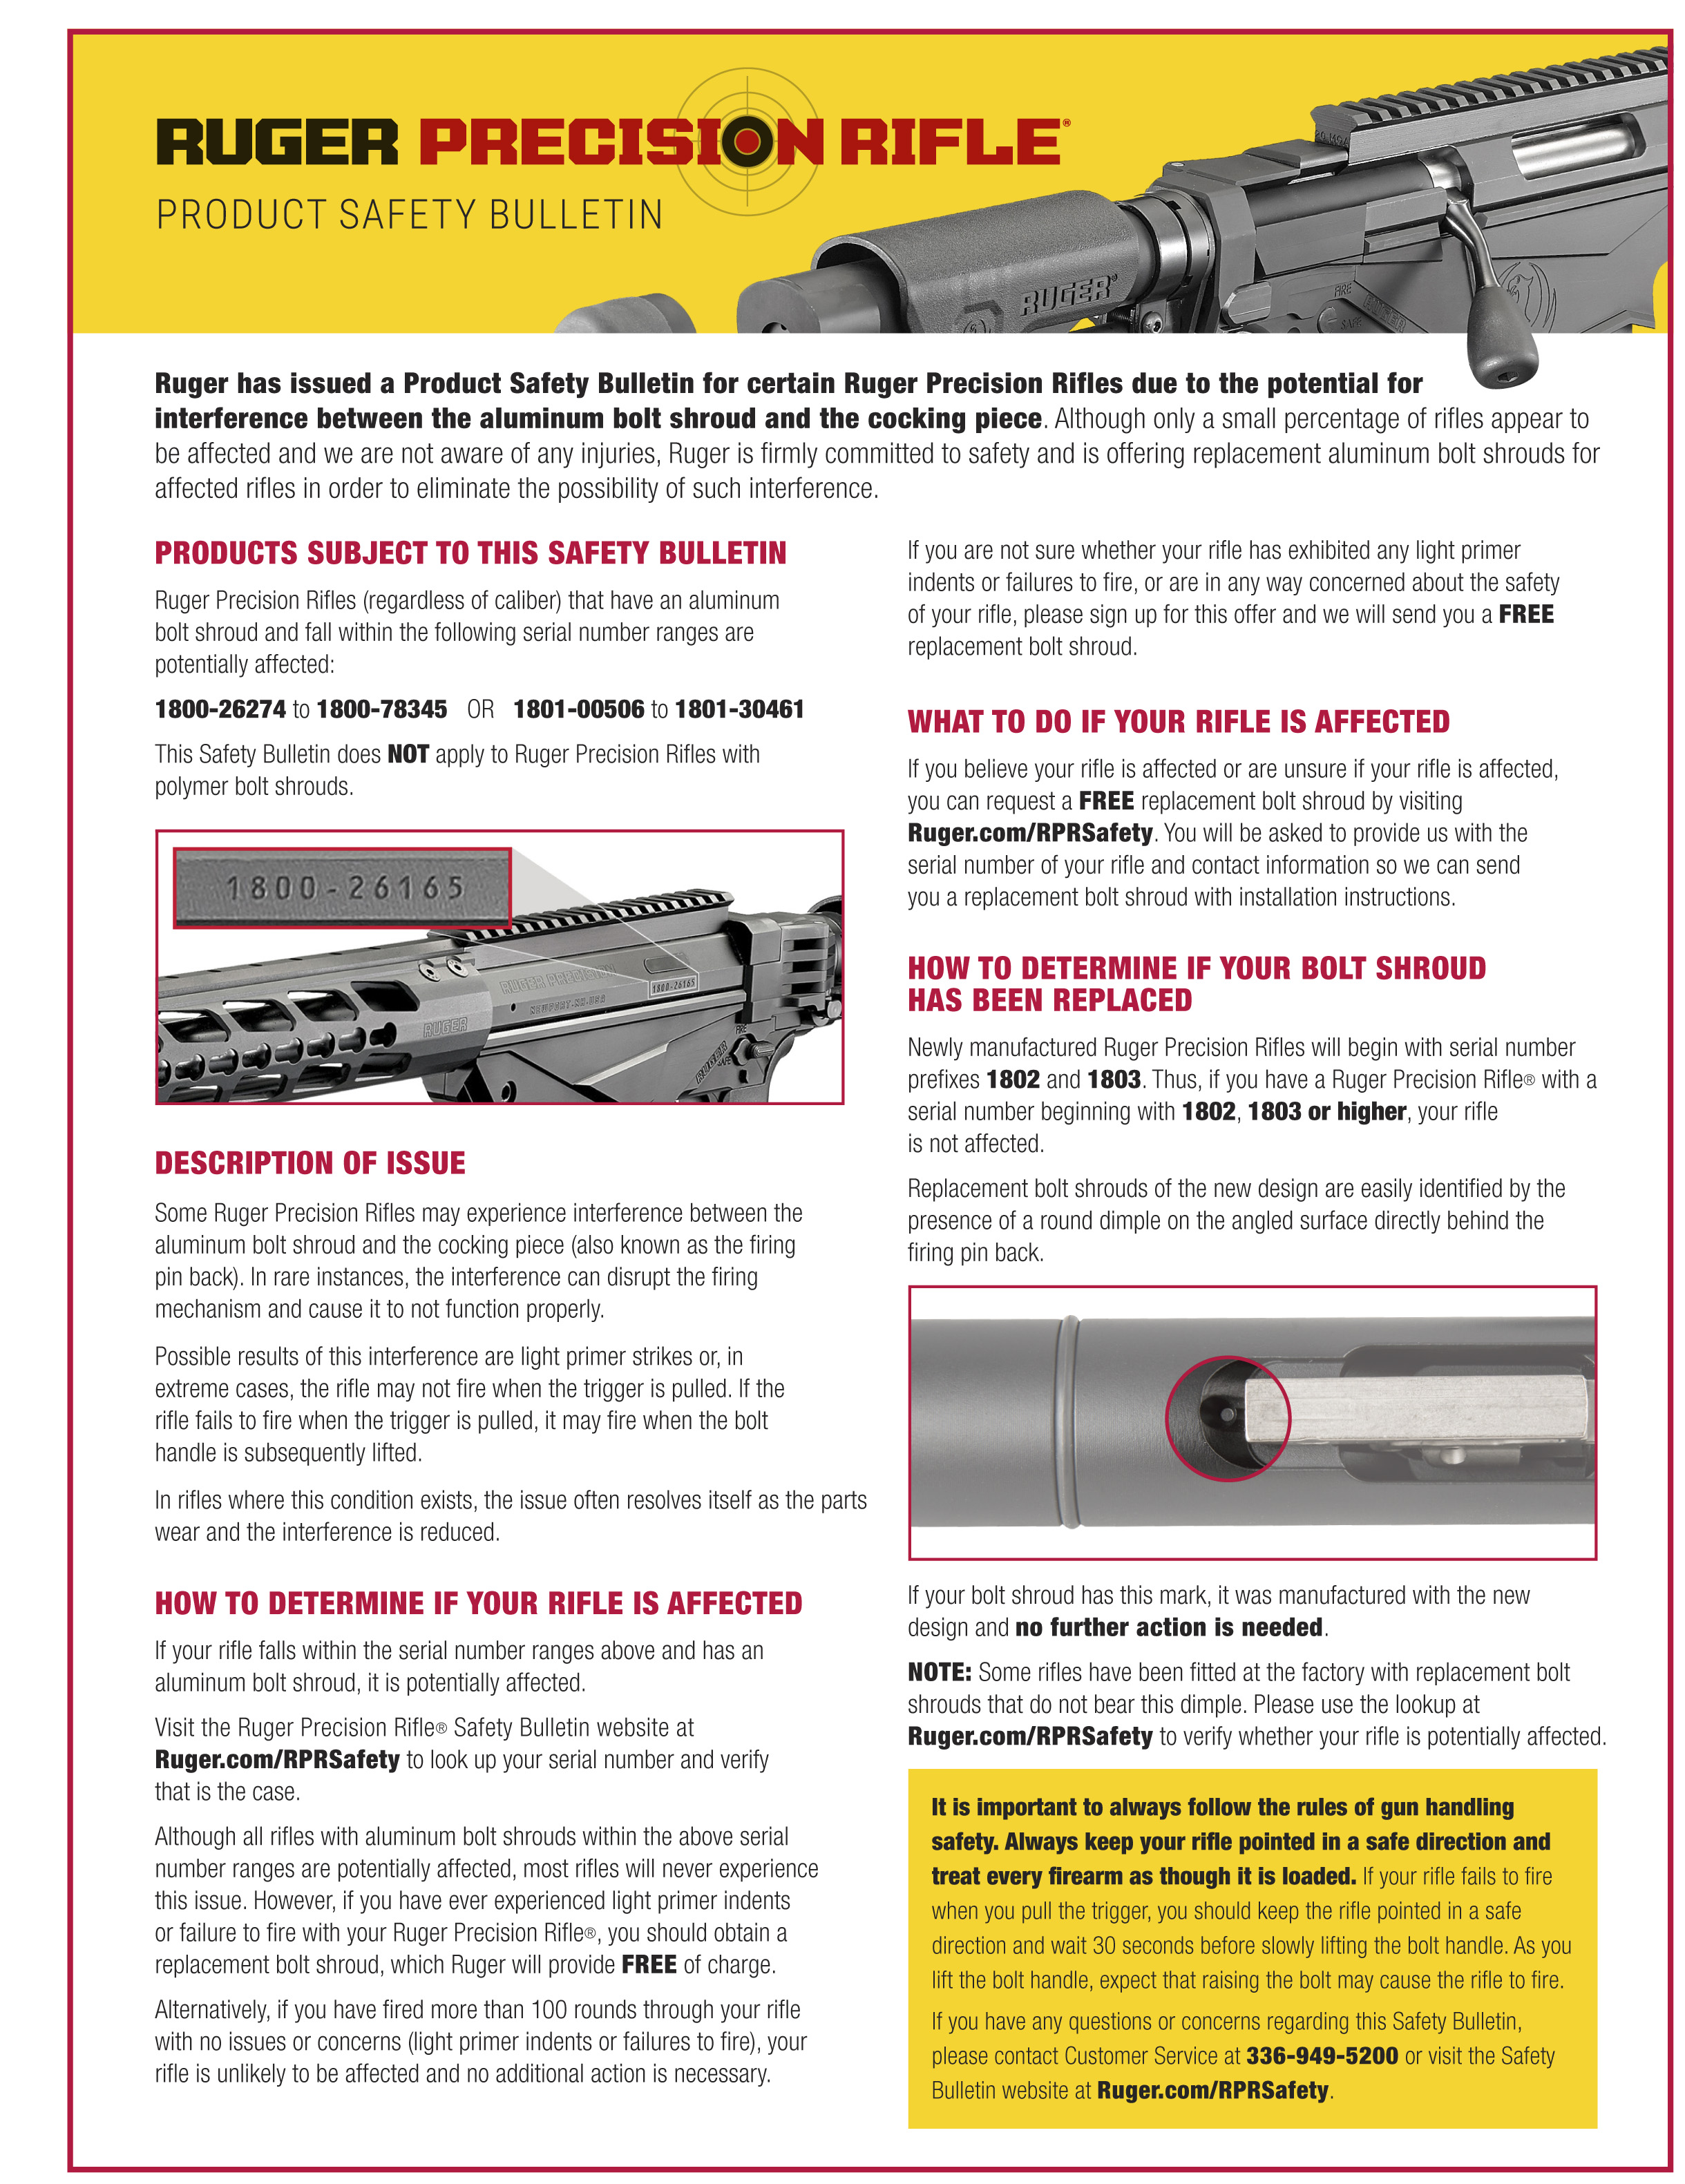 Ruger Safety Bulletin